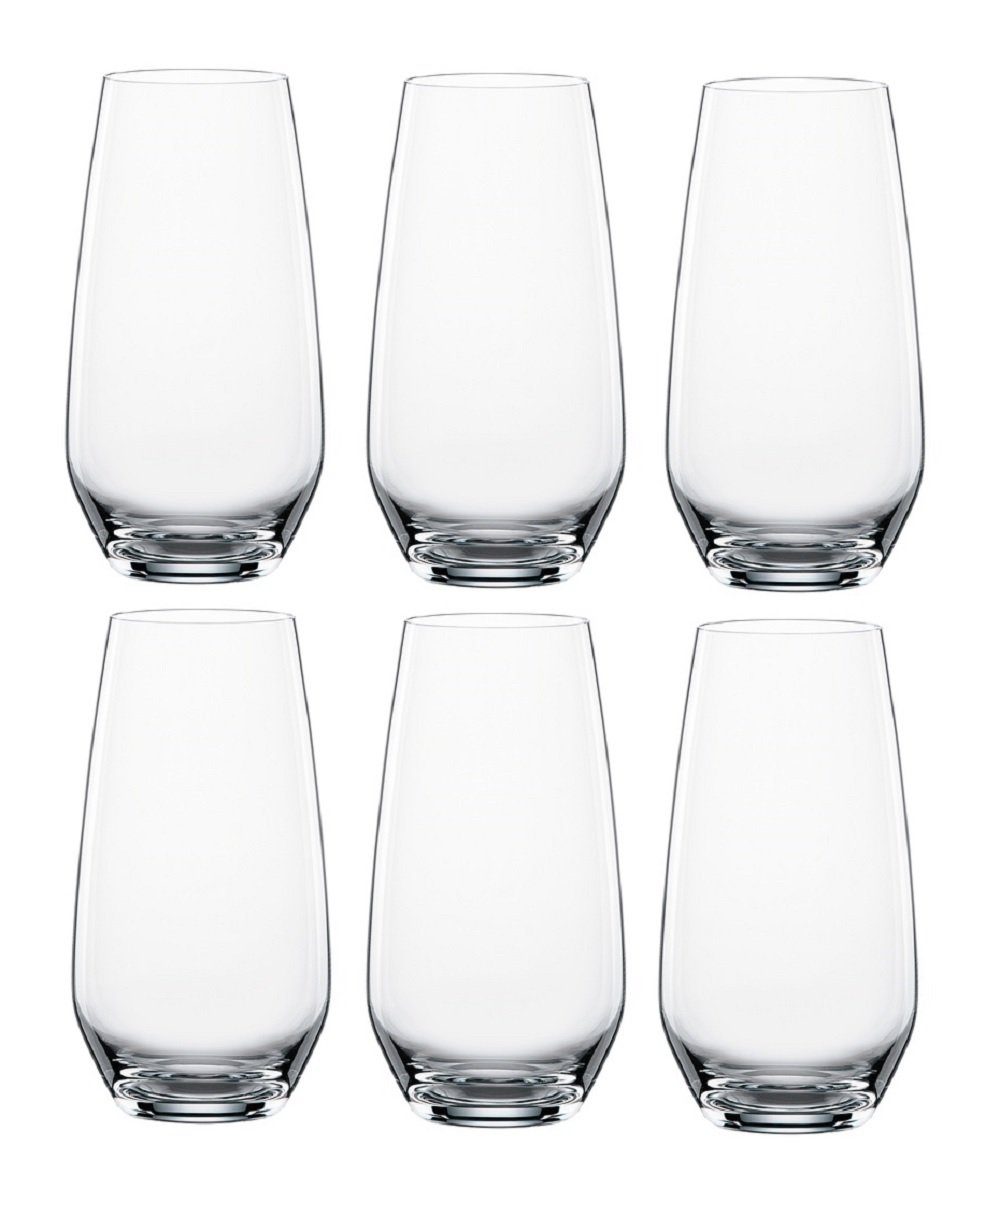 SPIEGELAU Longdrinkglas Authentis Summer Drinks (6er set), Glas